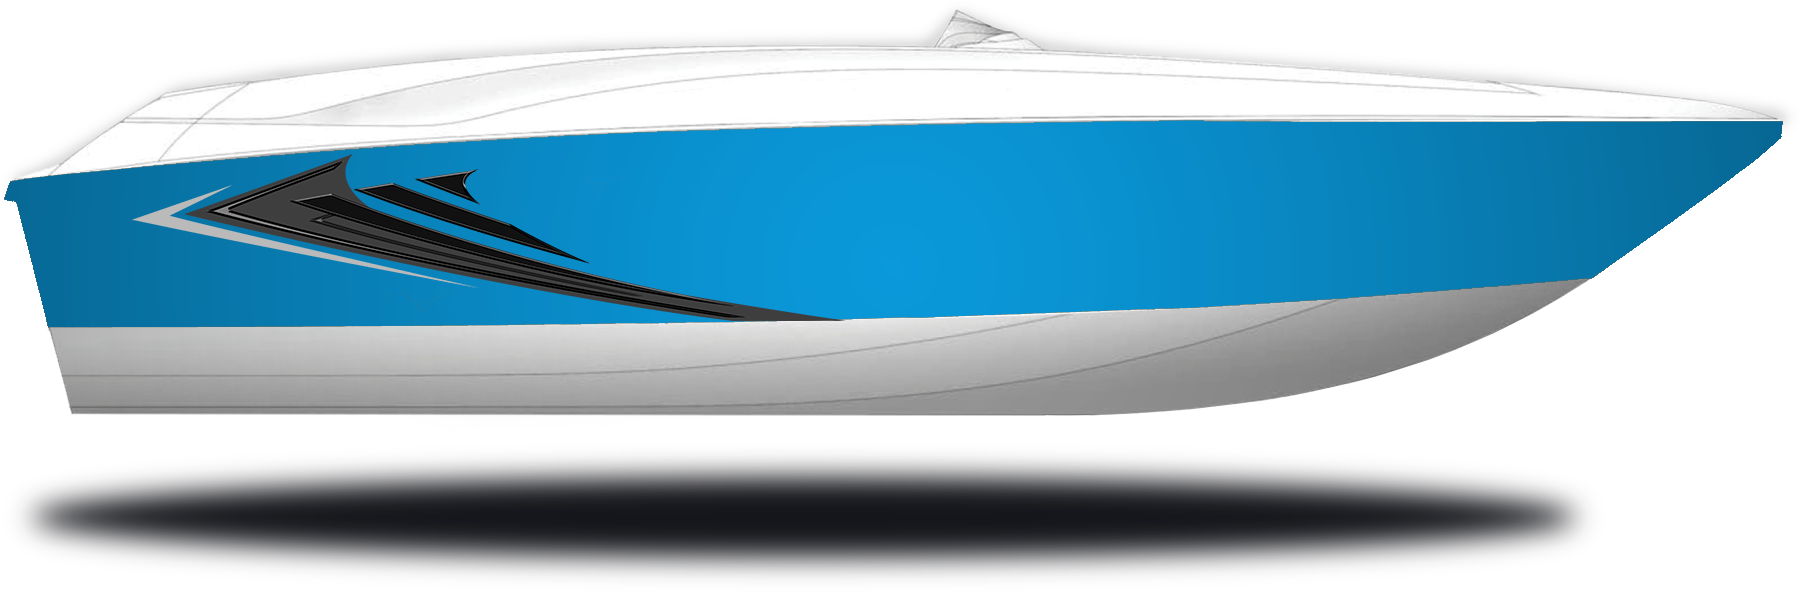 Impulse Blue Hull Sides (White Bottom)